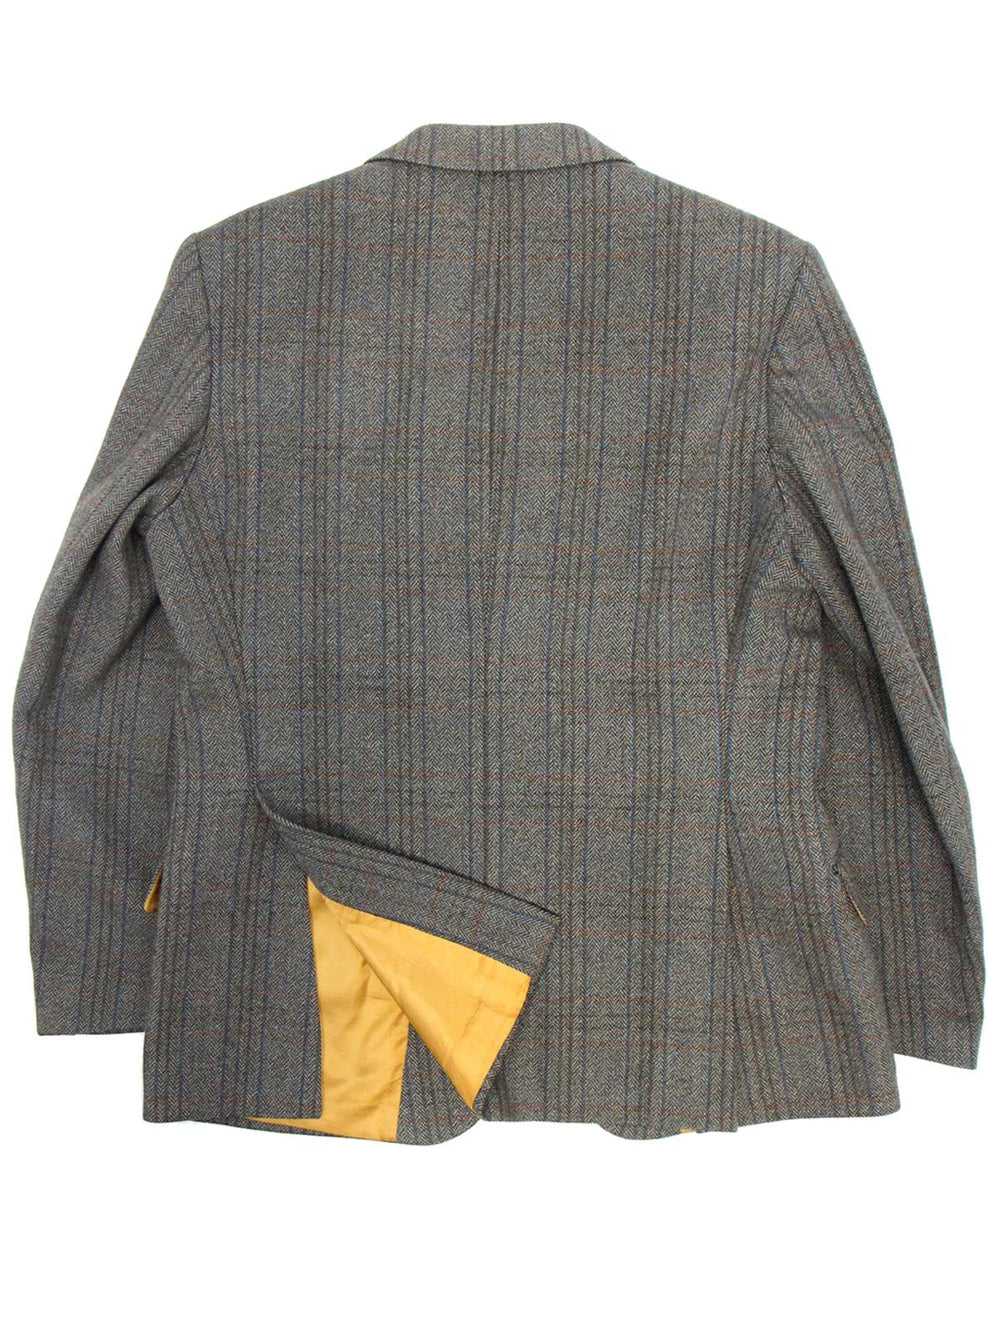 Vintage Saxony Herringbone Check Tweed Jacket - image 2